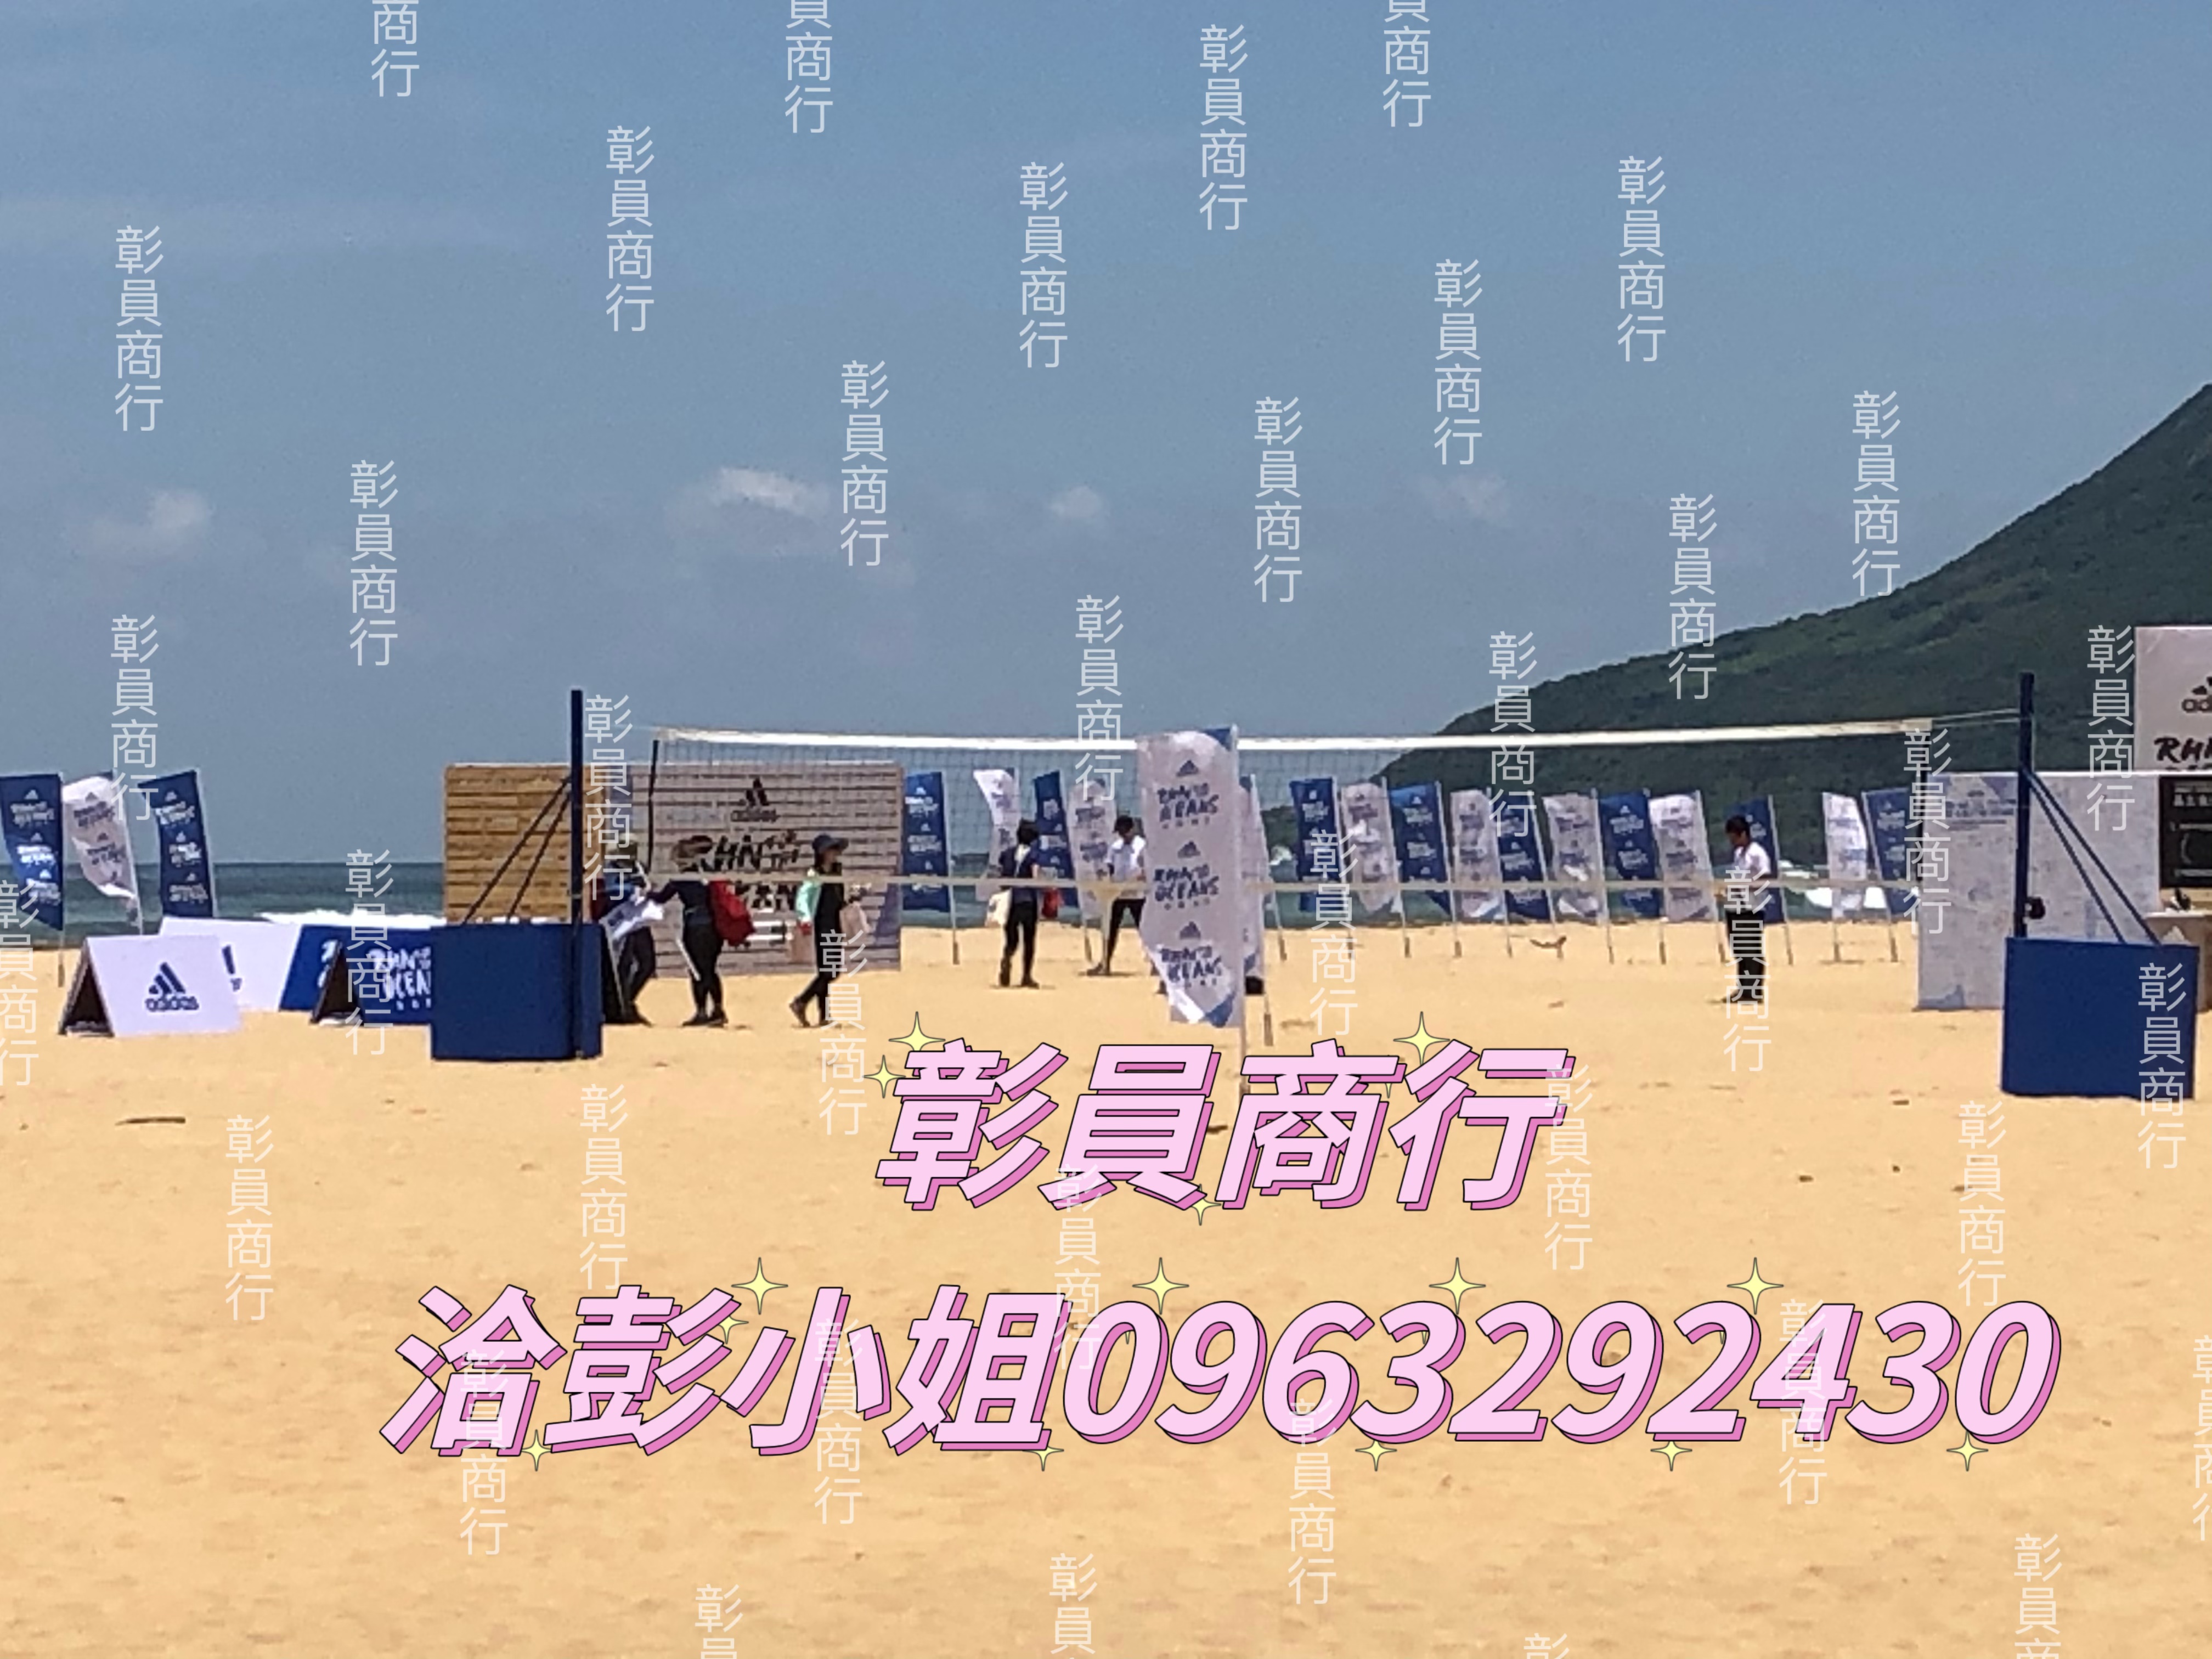 【沙灘排球架出租】裁判椅/場地線/排球/號碼衣/簡易型沙灘排球柱、排球置球車